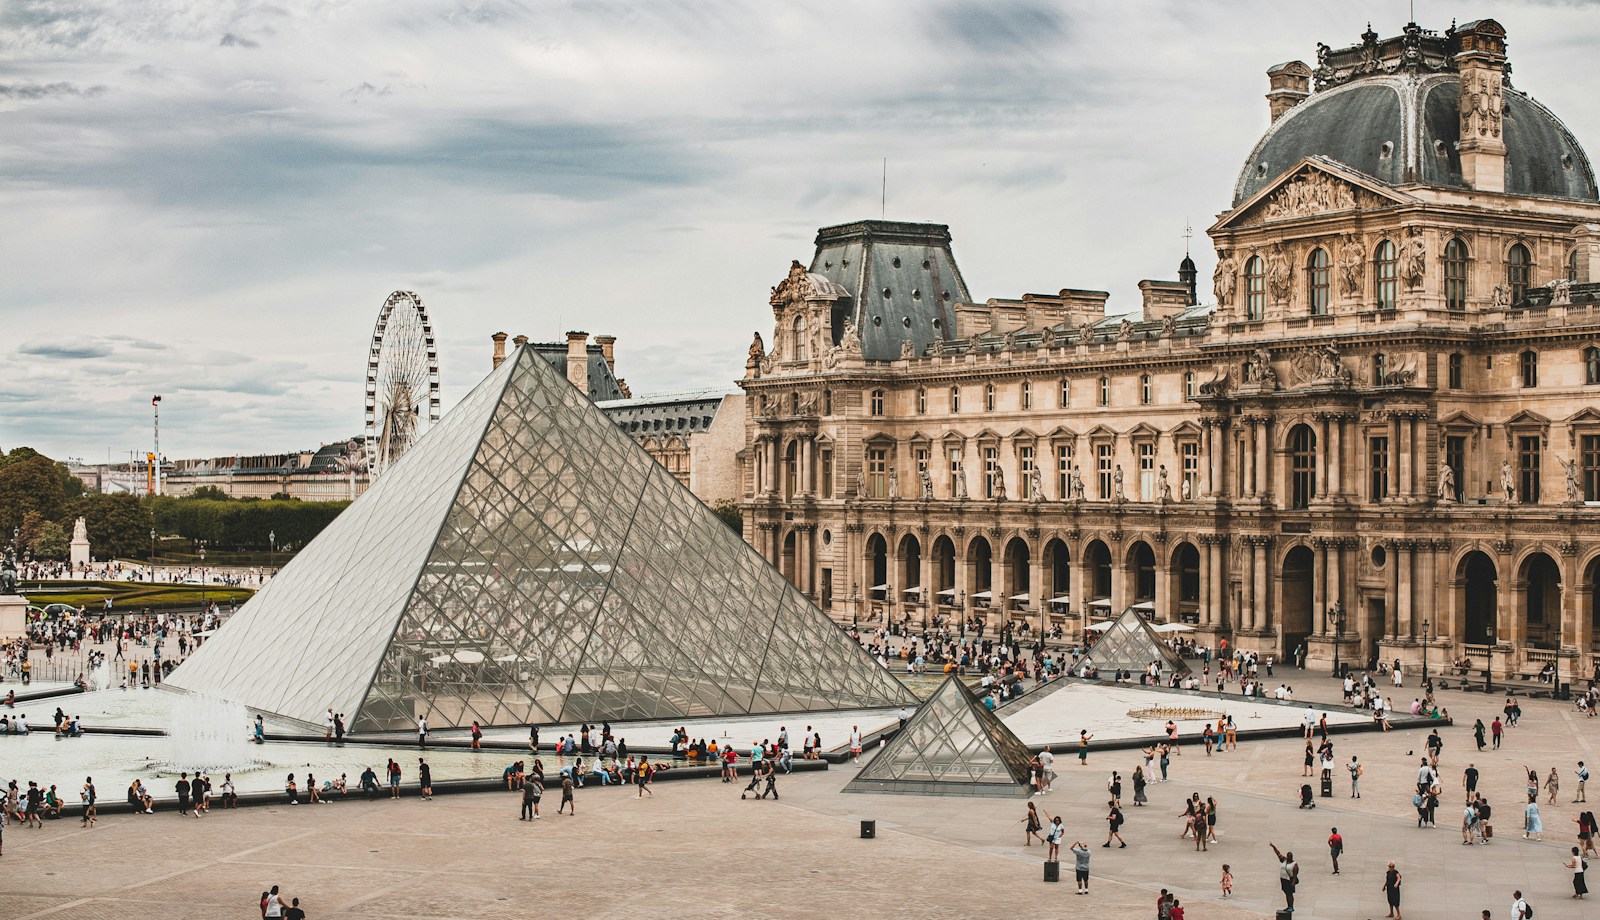 Sechs unbestreitbare Gründe, warum Sie den Louvre besuchen müssen